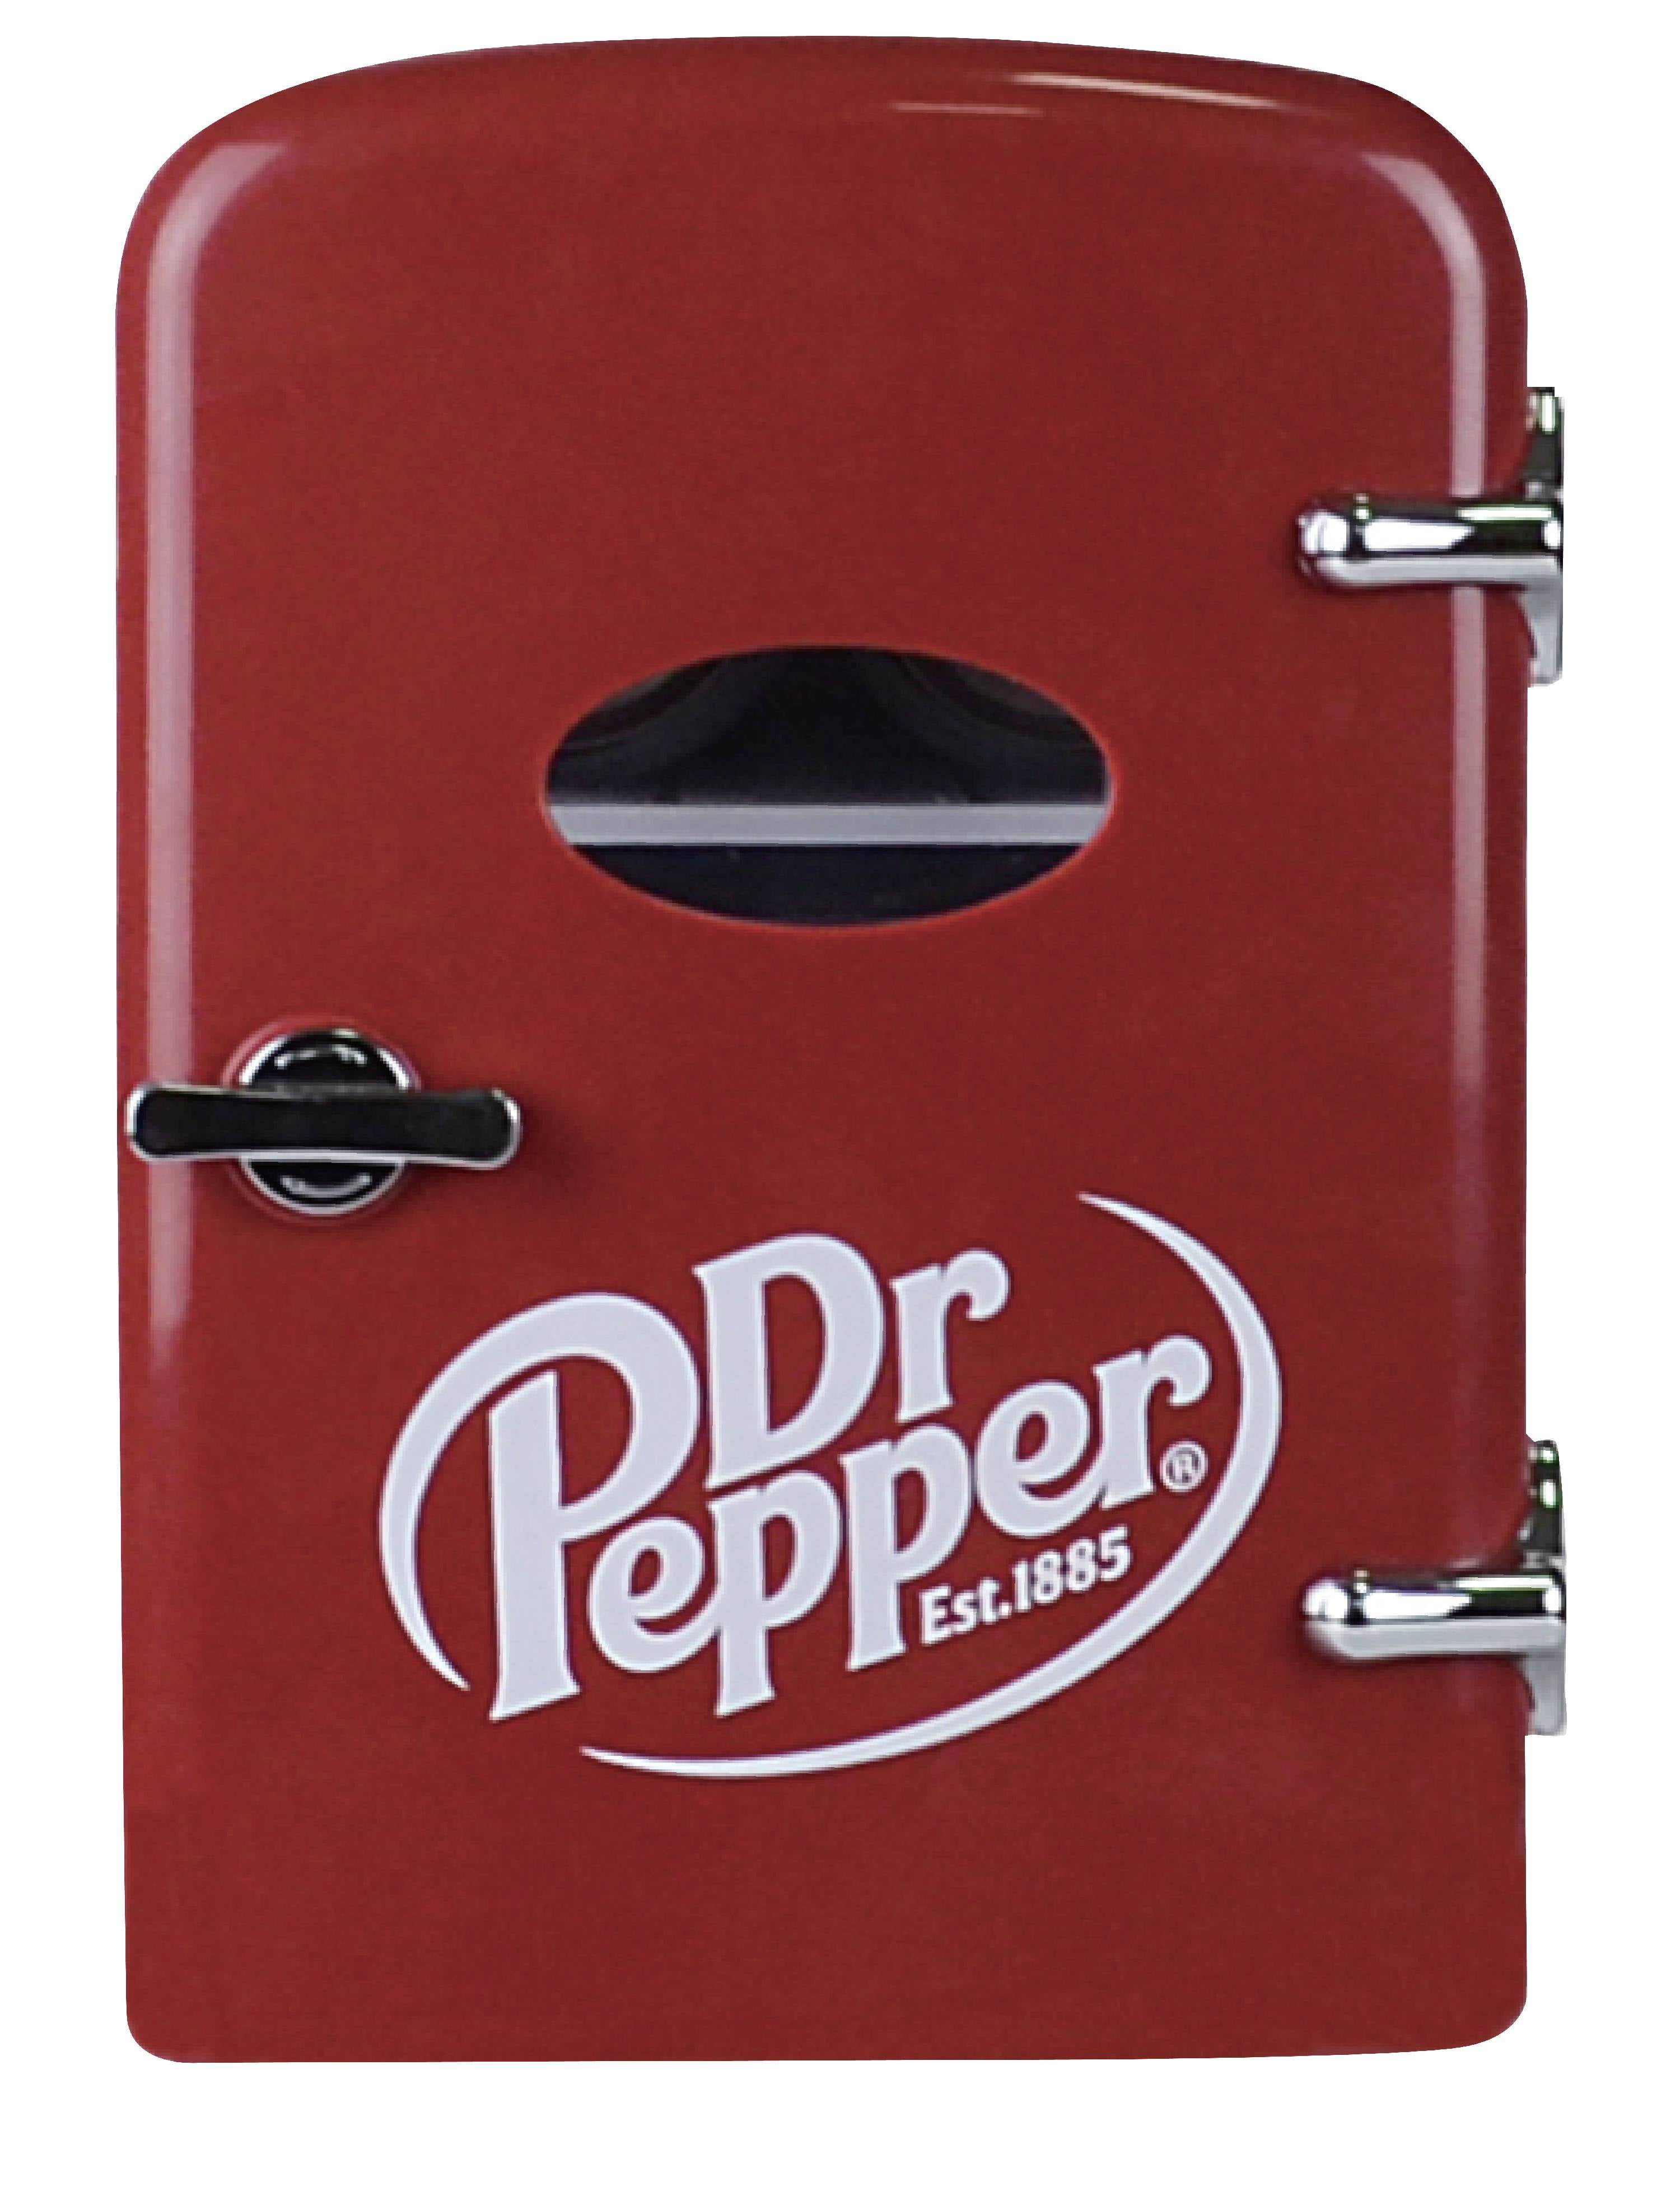 Vintage Dr Pepper Snack Bar Trailer Box